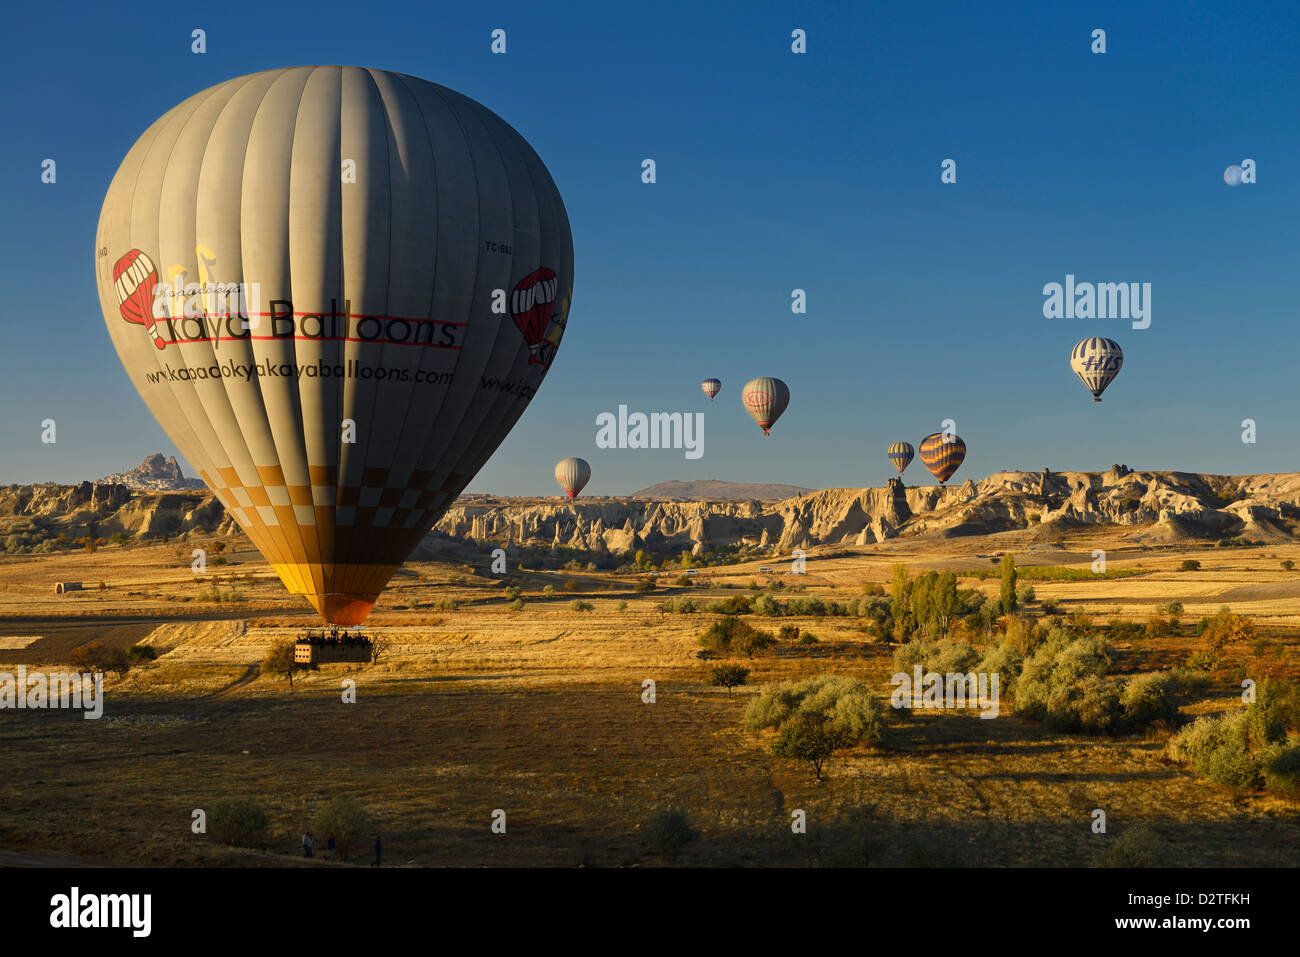 Hot Air Balloon landing dans les champs agricoles à la vallée de l'amour et du parc national de Göreme Turquie nevsehir Cappadoce avec lune Banque D'Images